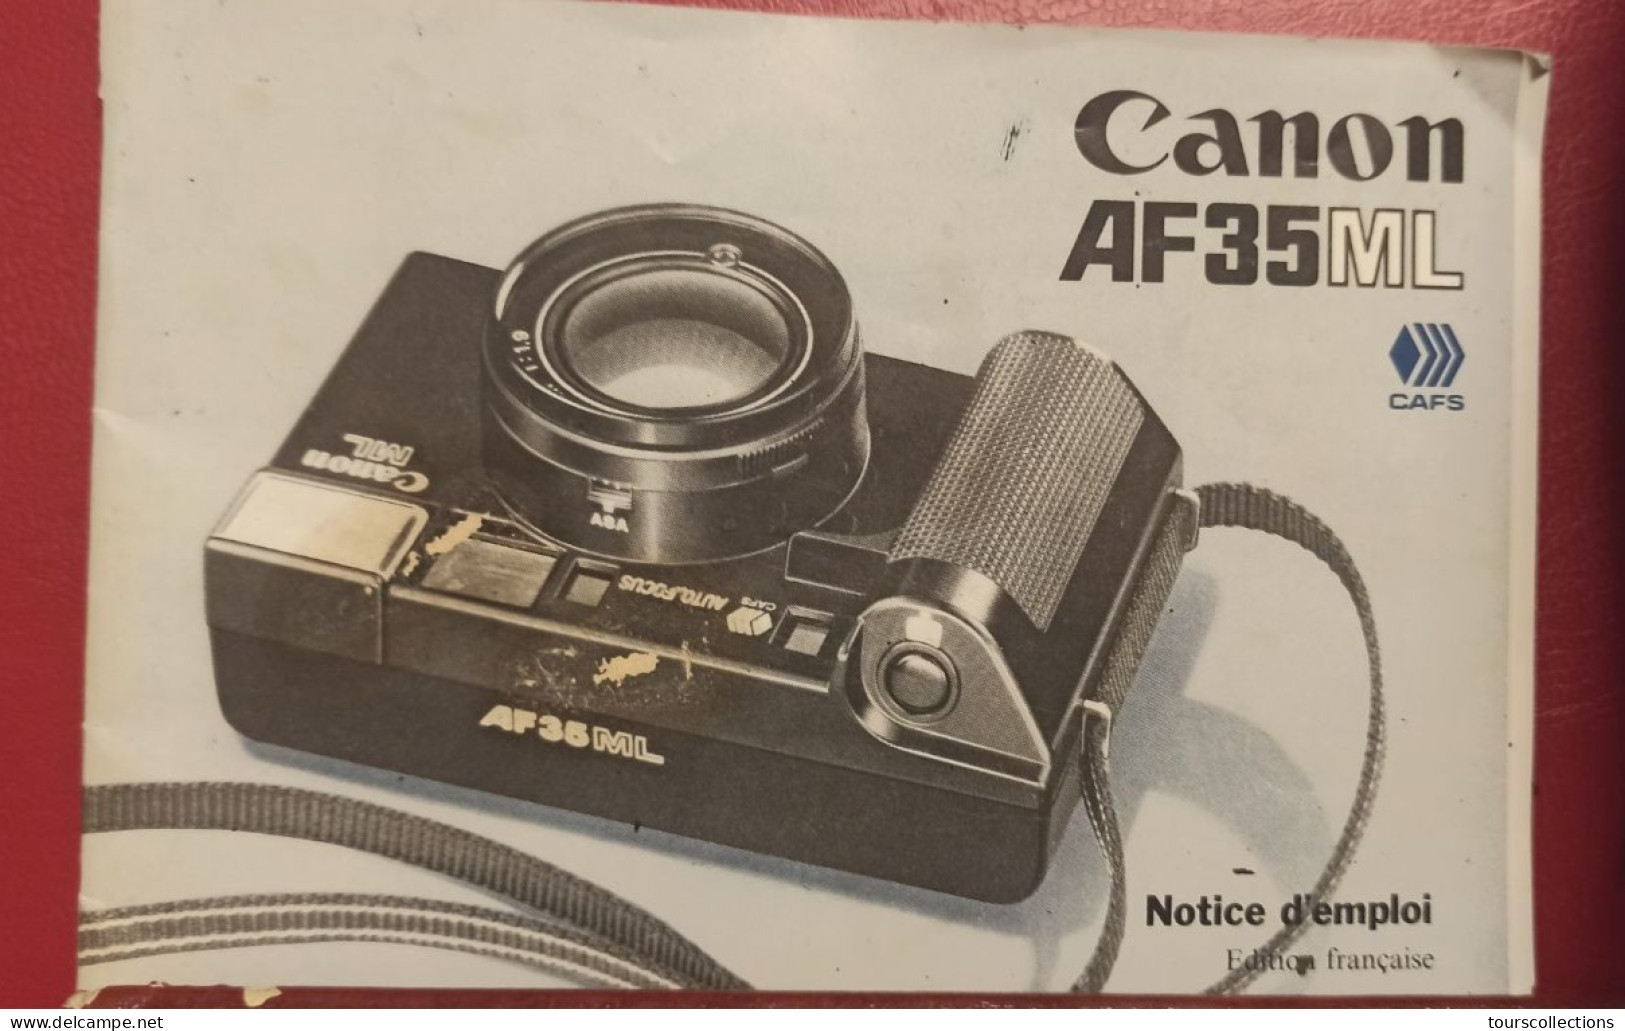 APPAREIL PHOTO COMPACT de 1983 CANON AF35 ML  Armement , exposition et flash automatique incorporé - rebobinage motorisé